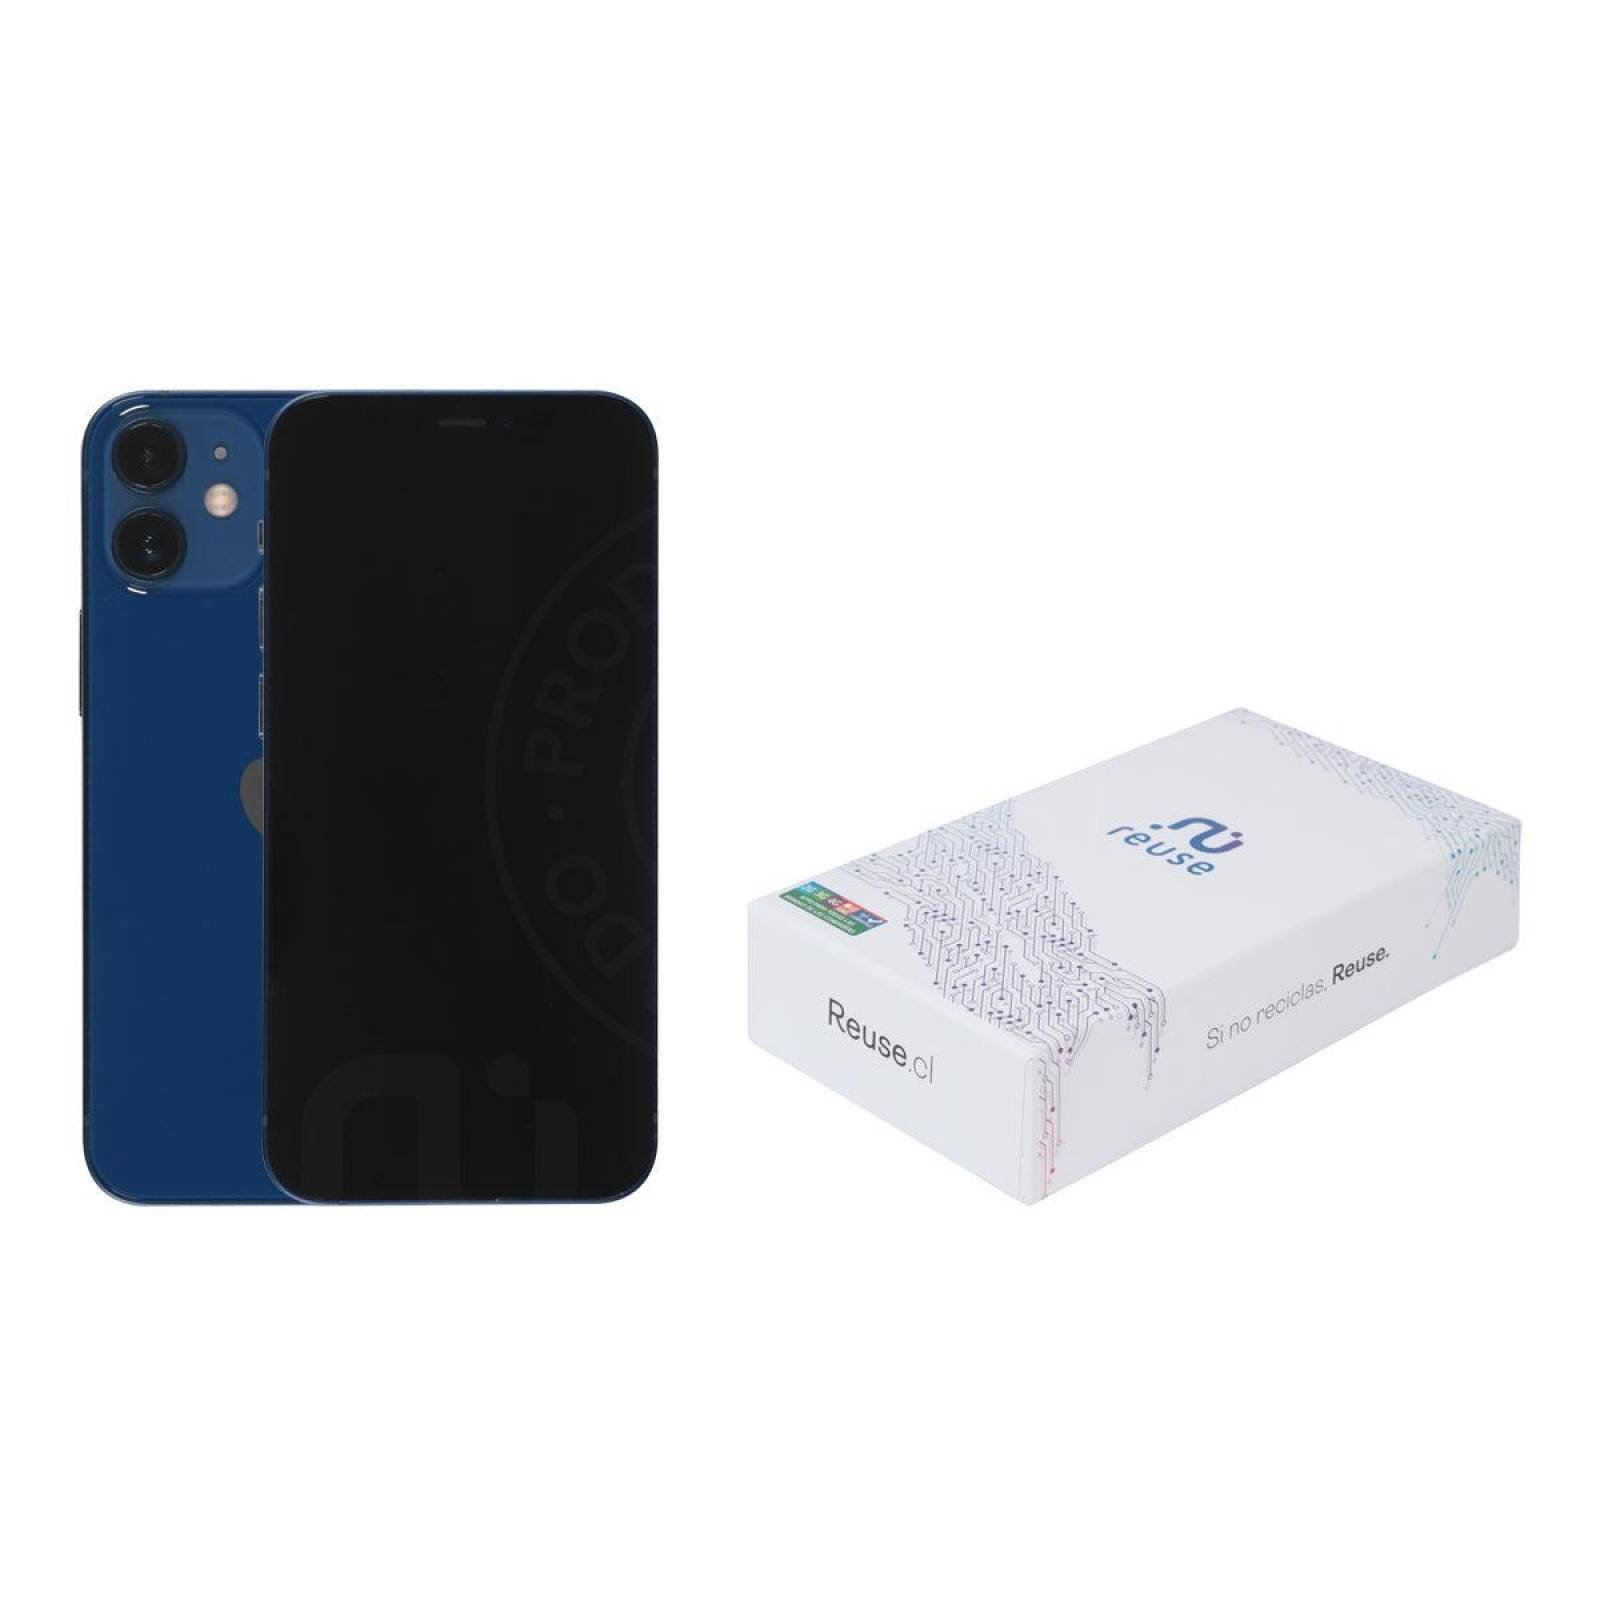 Apple iPhone 12 mini (64 GB) - Azul